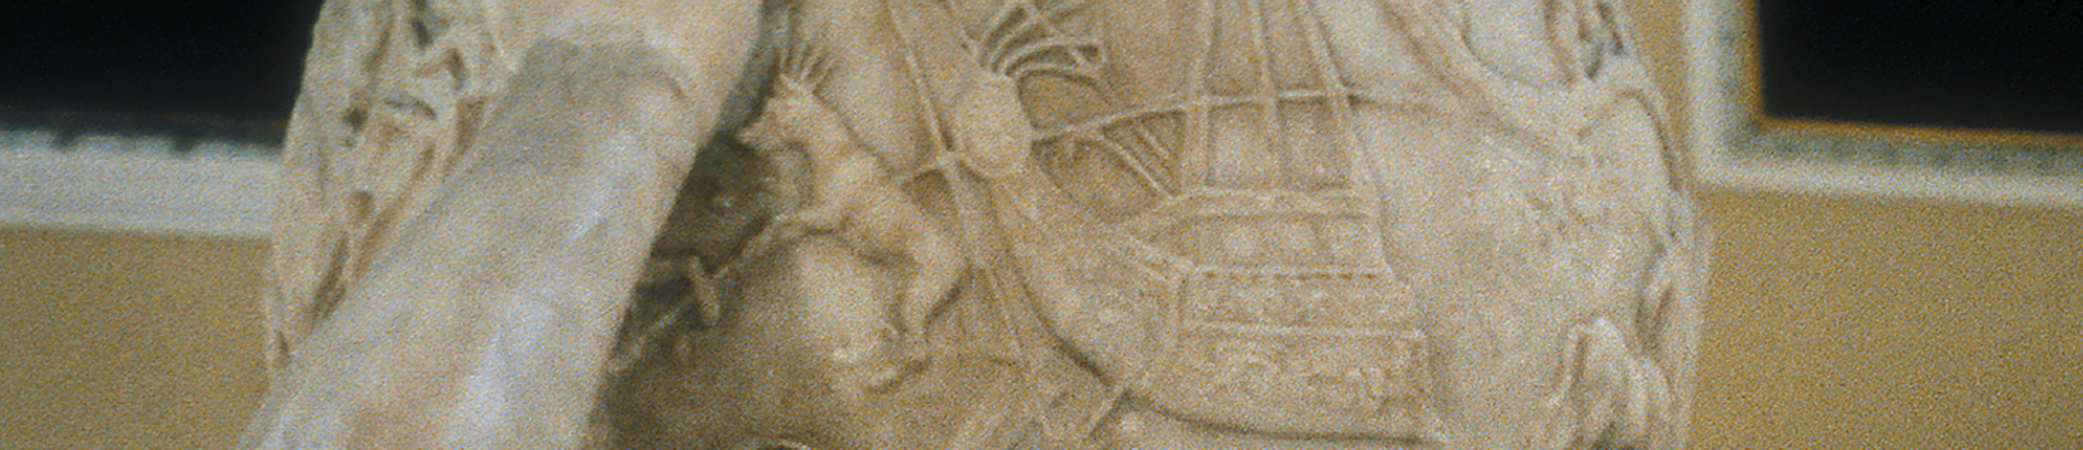 században készült, a Farnese Atlasznak nevezett márványszobor tartja a vállain. Az éggömb átmérője 65 centiméter.